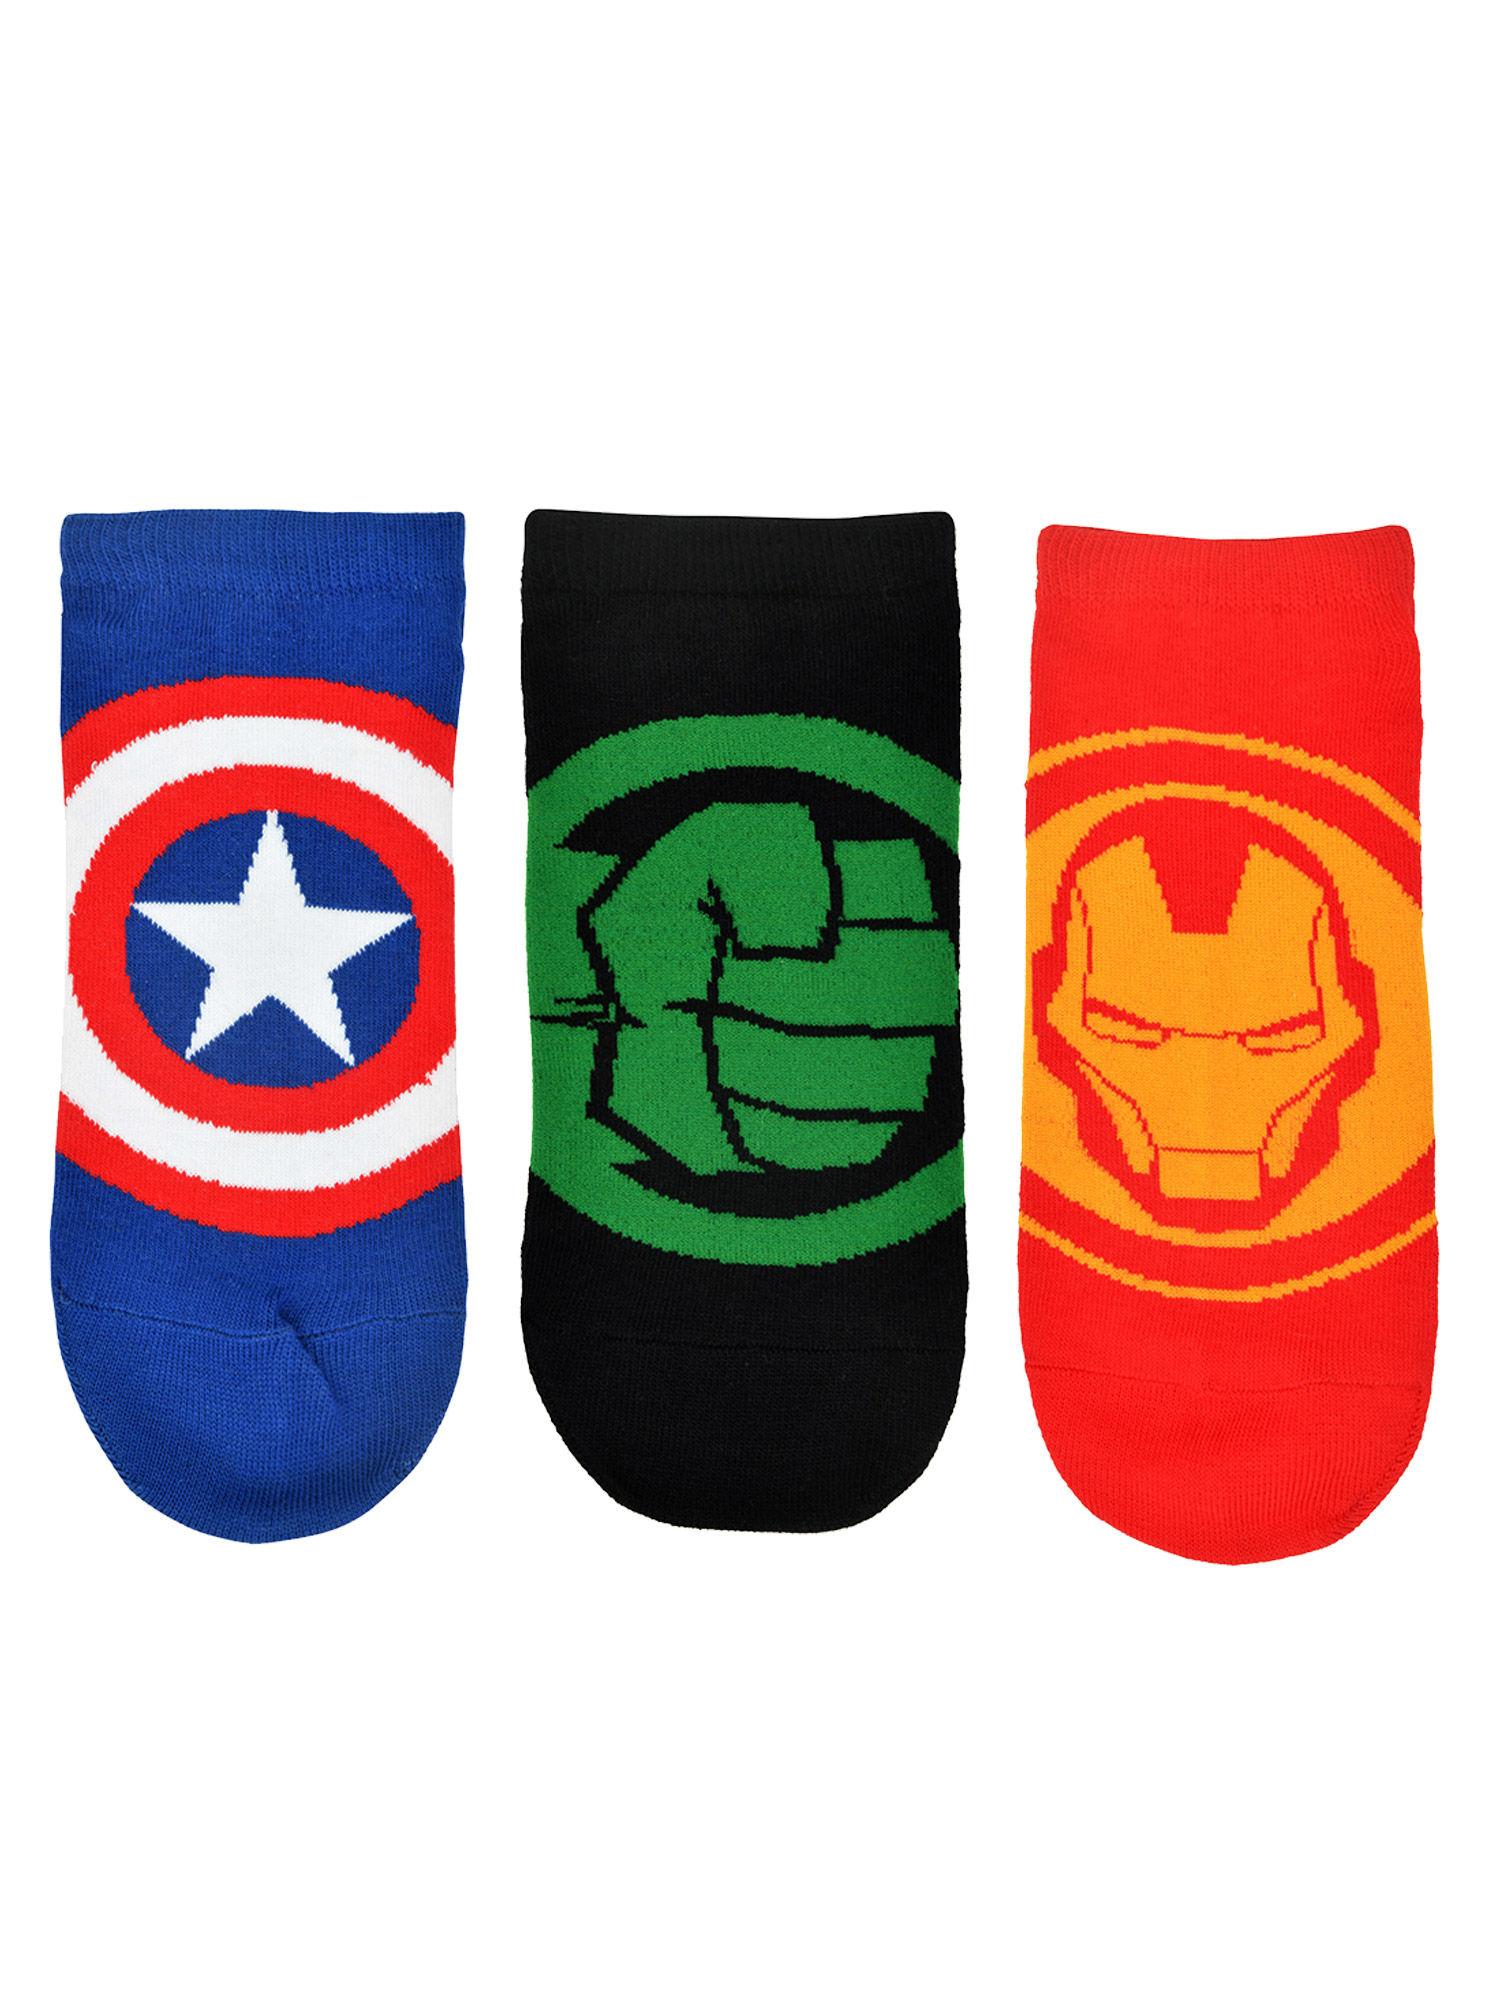 x marvel avengers logo themed ankle socks for men blue,red,green (pack of 3)